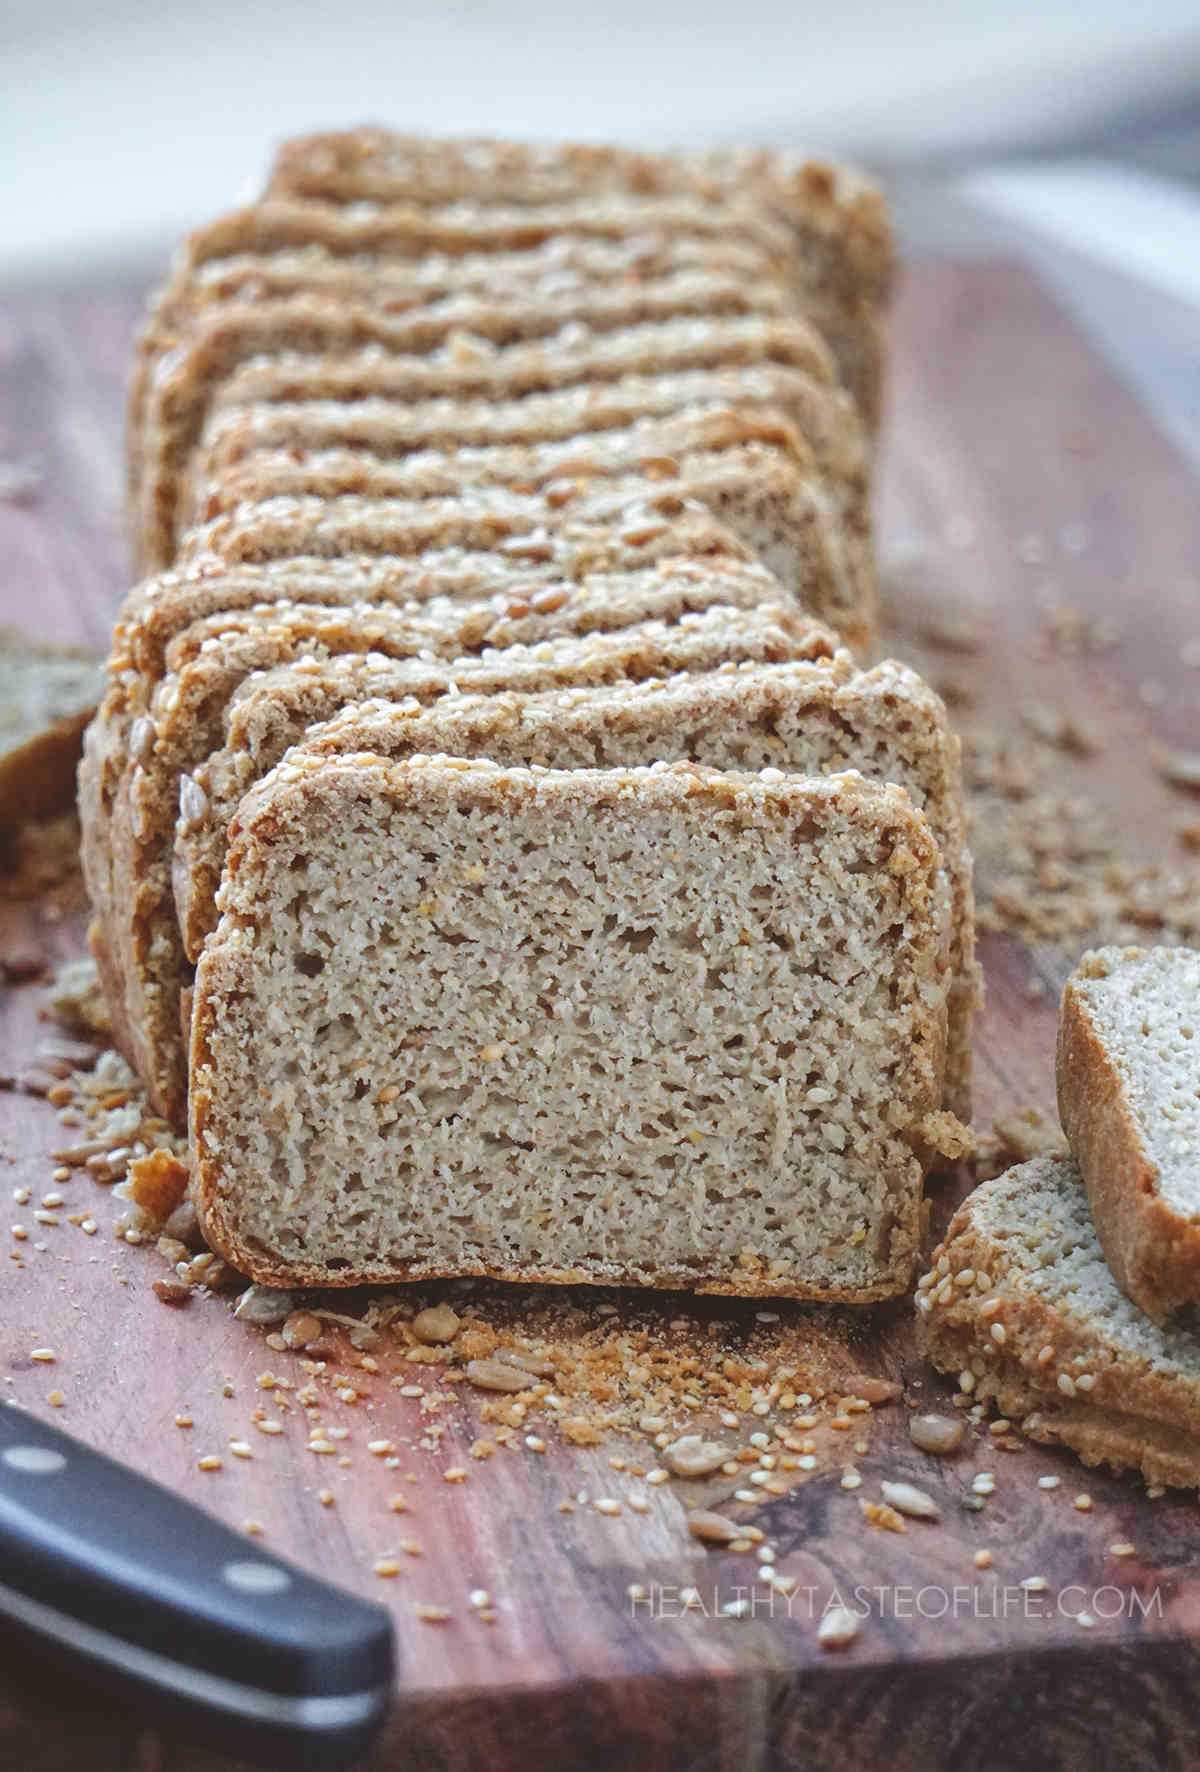 Vegan Gluten Free Sourdough Bread Recipe From Scratch.